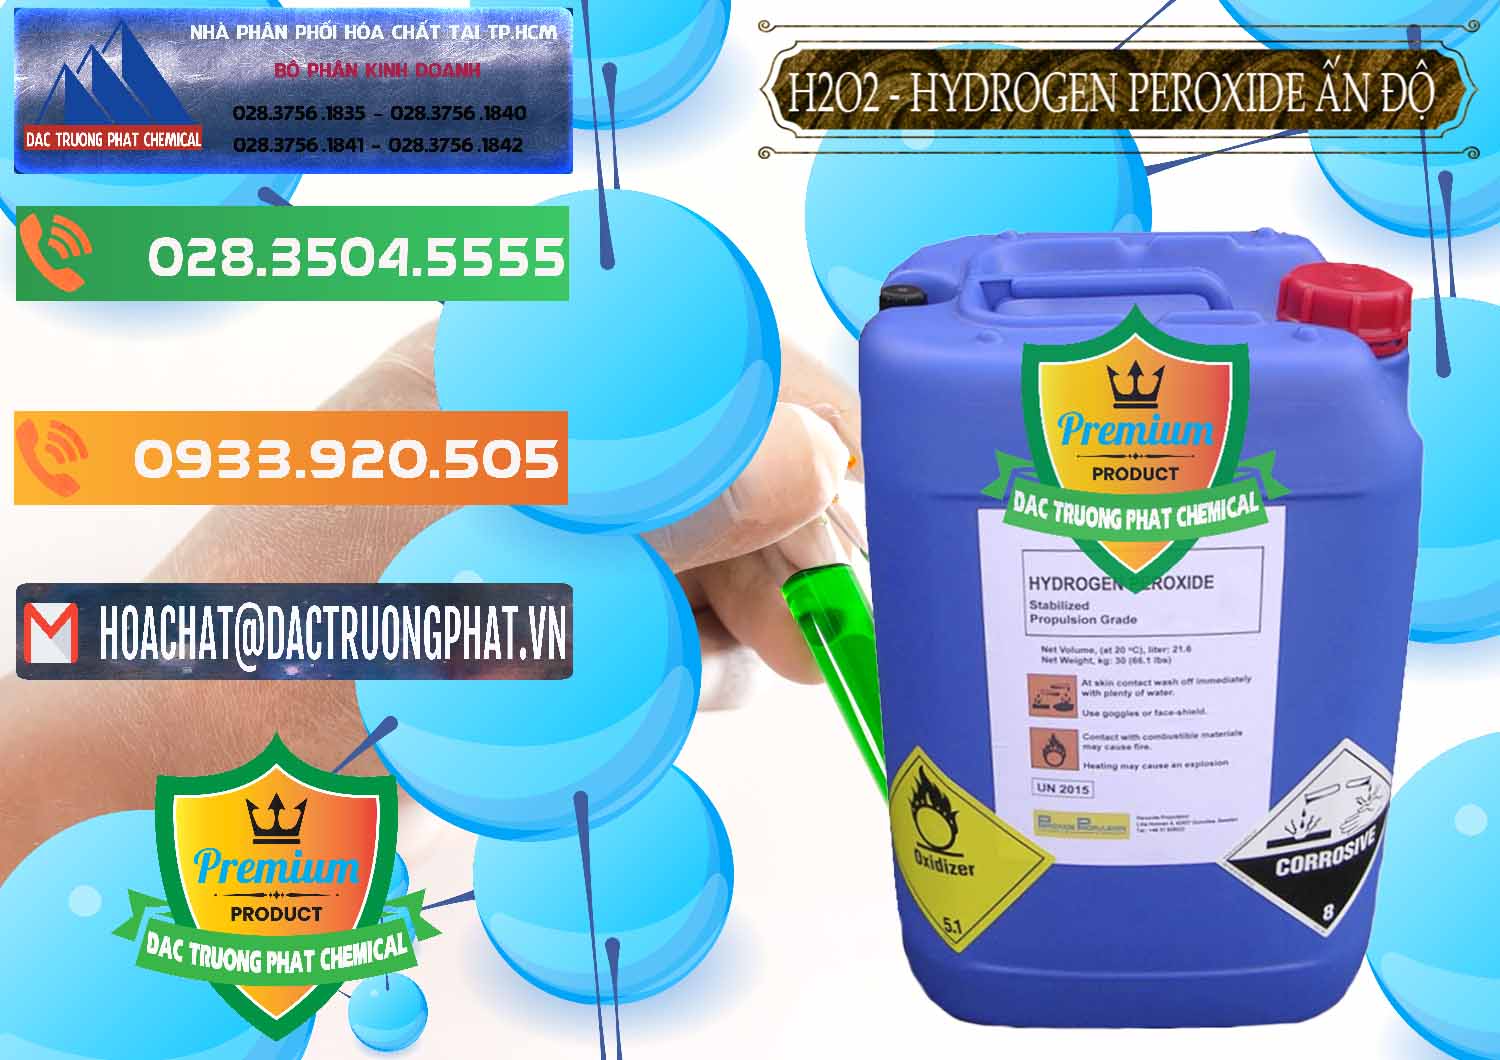 Cty chuyên bán ( cung ứng ) H2O2 - Hydrogen Peroxide 50% Ấn Độ India - 0349 - Phân phối _ bán hóa chất tại TP.HCM - hoachatxulynuoc.com.vn